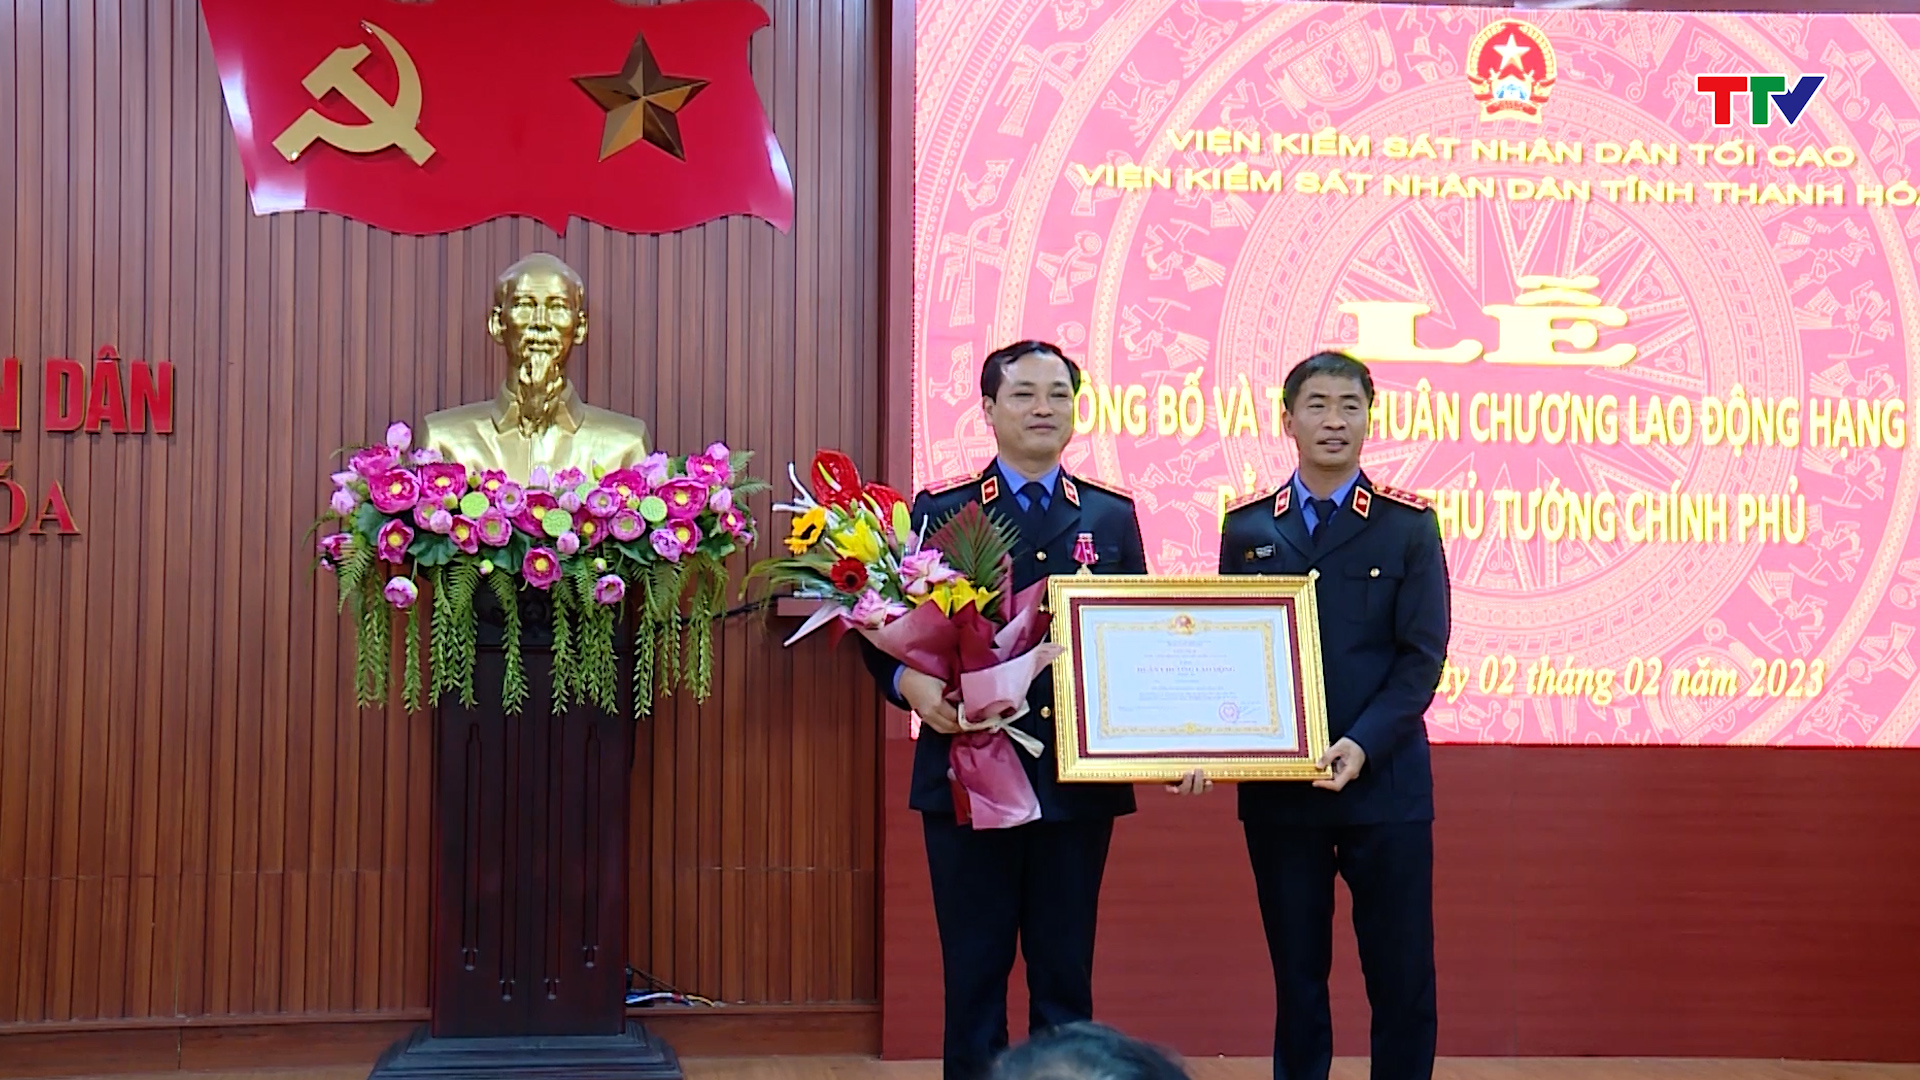 Lễ công bố và trao quyết định bổ nhiệm chức vụ Phó viện trưởng Viện kiểm sát Nhân dân tỉnh Thanh Hoá - Ảnh 2.